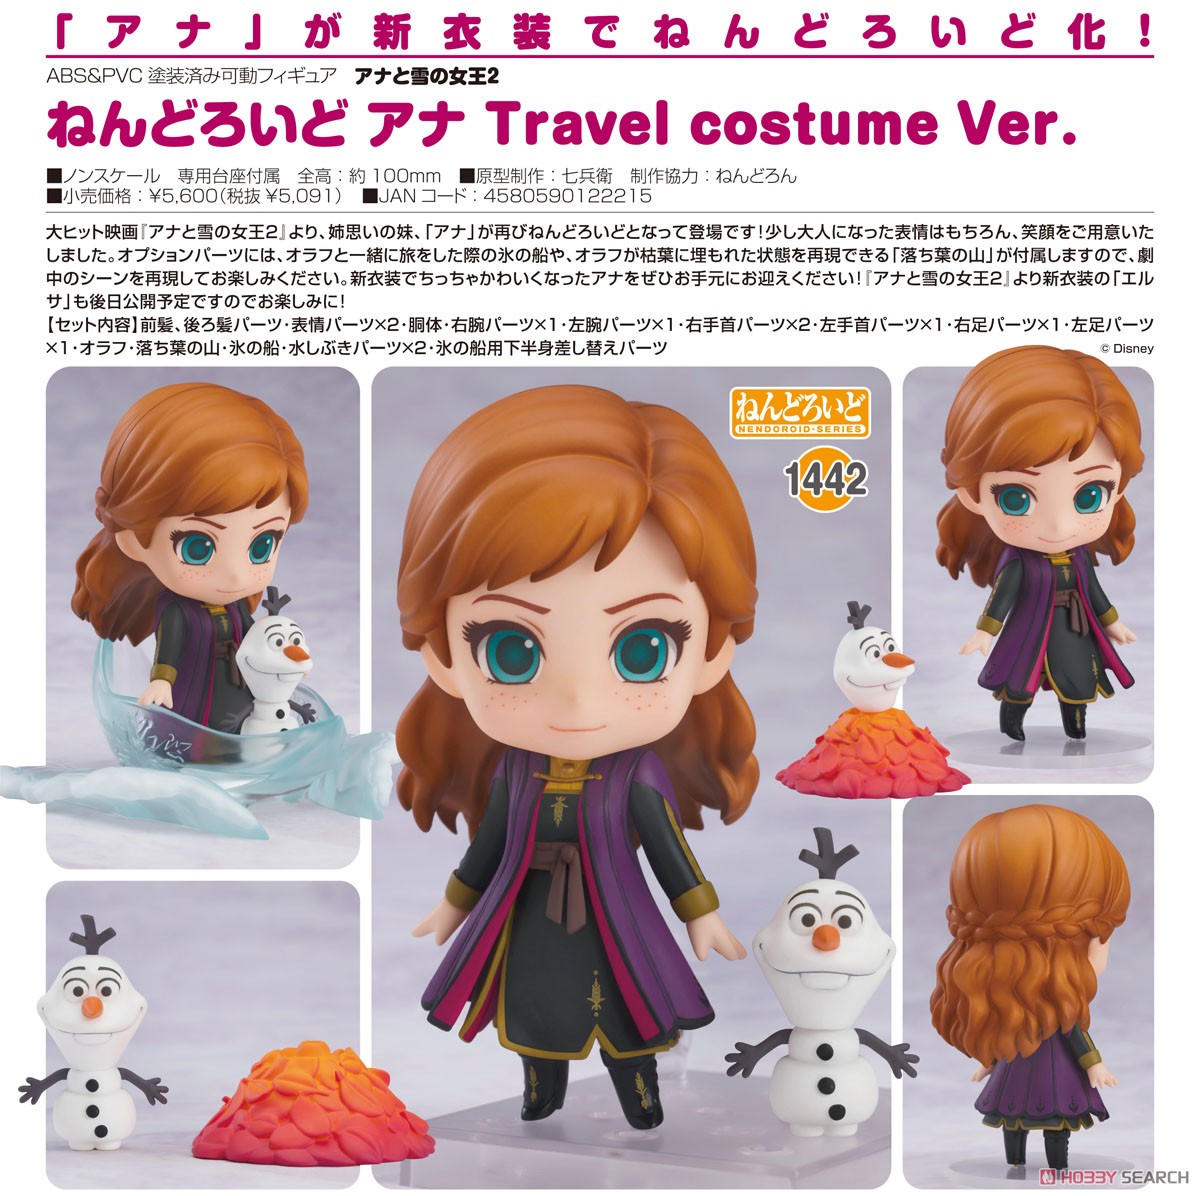 ねんどろいど『アナ Travel costume Ver.』アナと雪の女王2 デフォルメ可動フィギュア-006